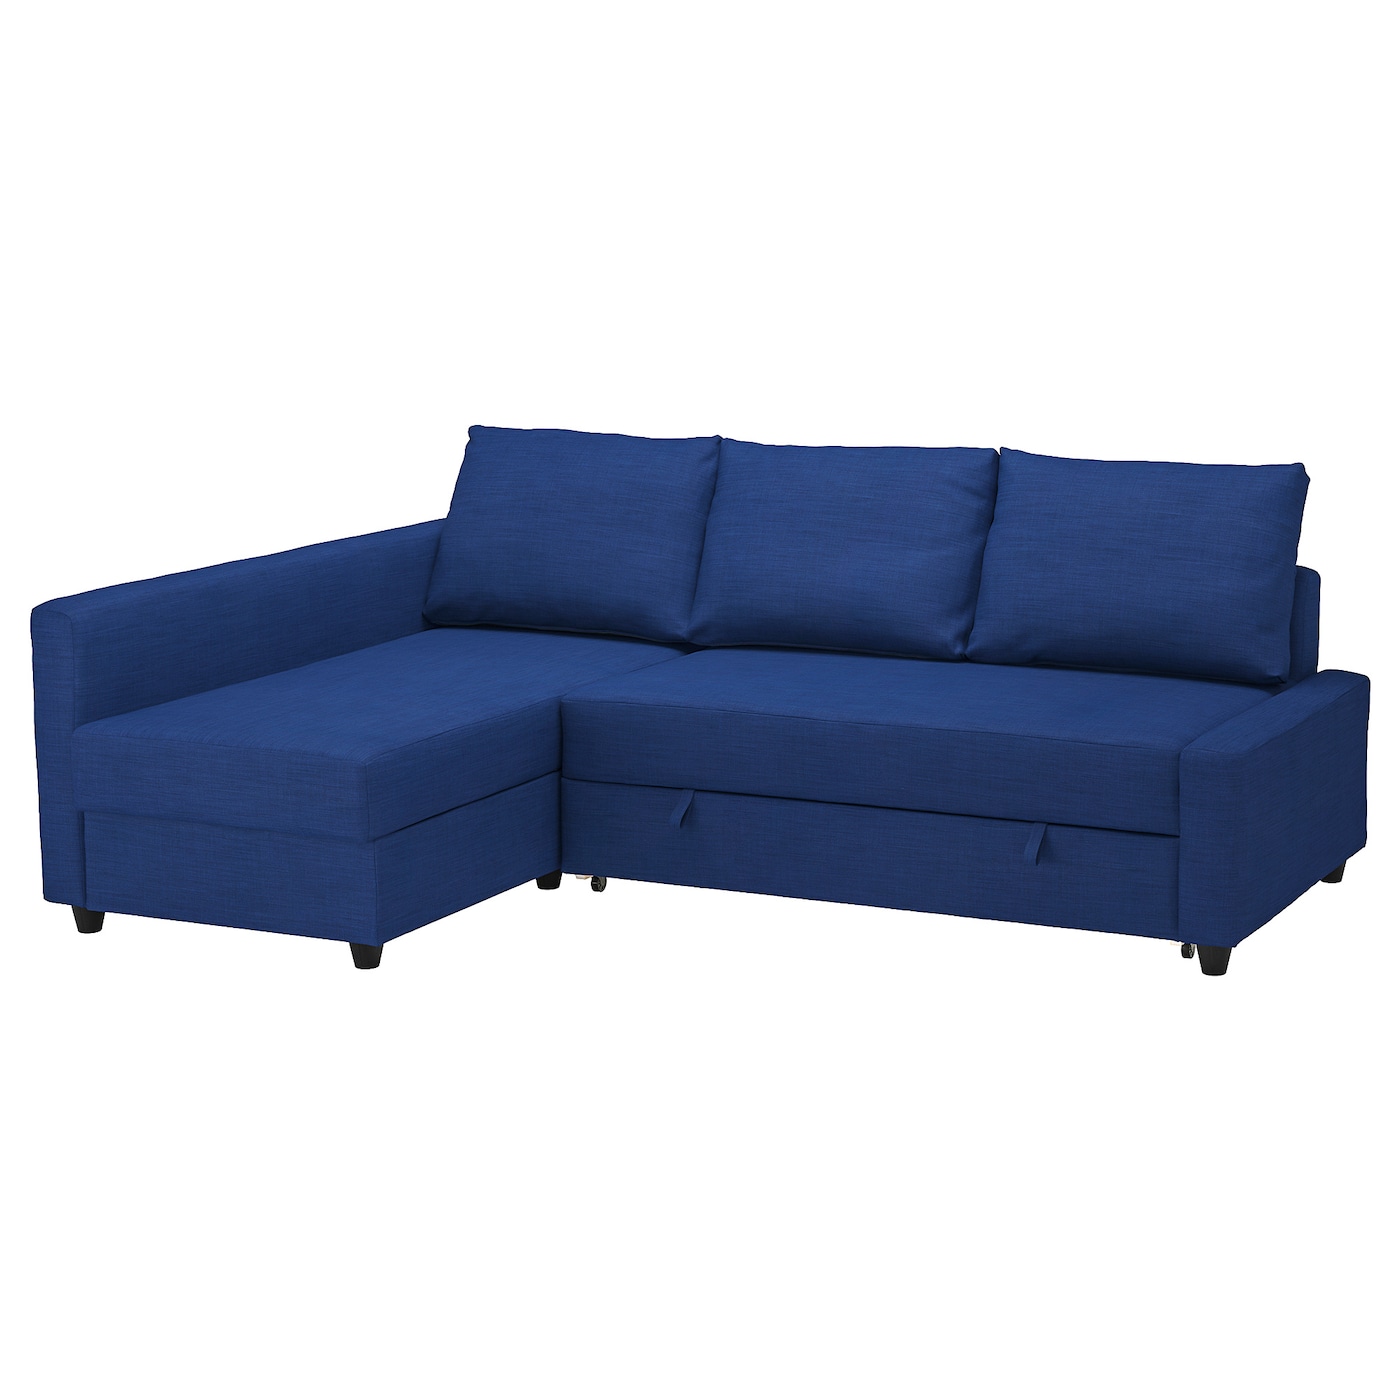 ФРИХЕТЕН Угловой диван-кровать + место для хранения, Скифтебо синий FRIHETEN IKEA диван кровать угловой дилан тд 422